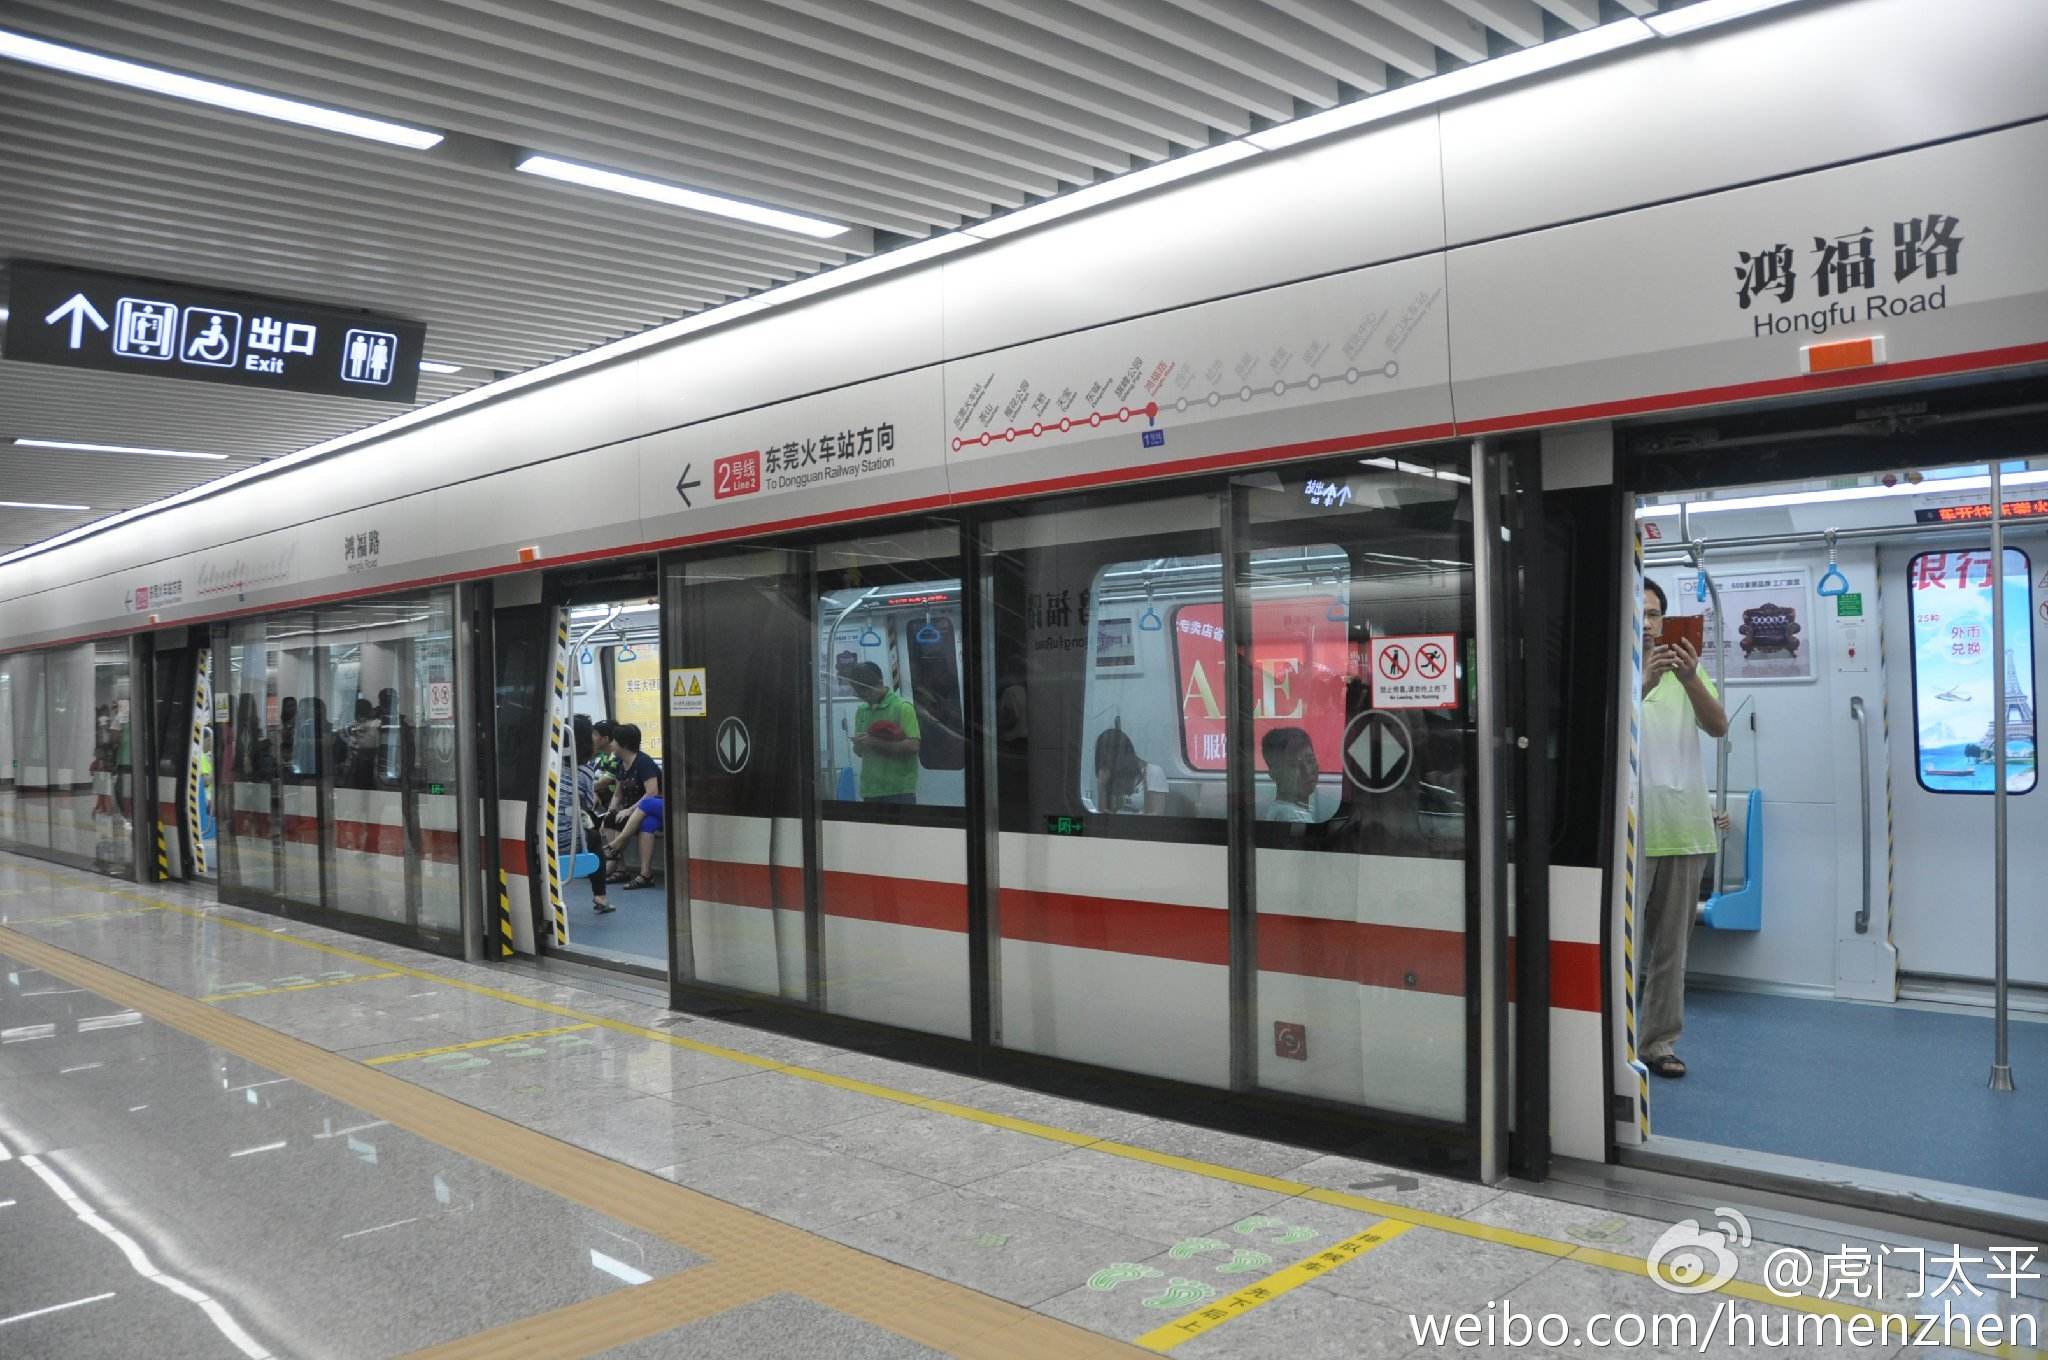 粤港澳大湾区时代,东莞地铁1号线正式开工,将连通广州与深圳!